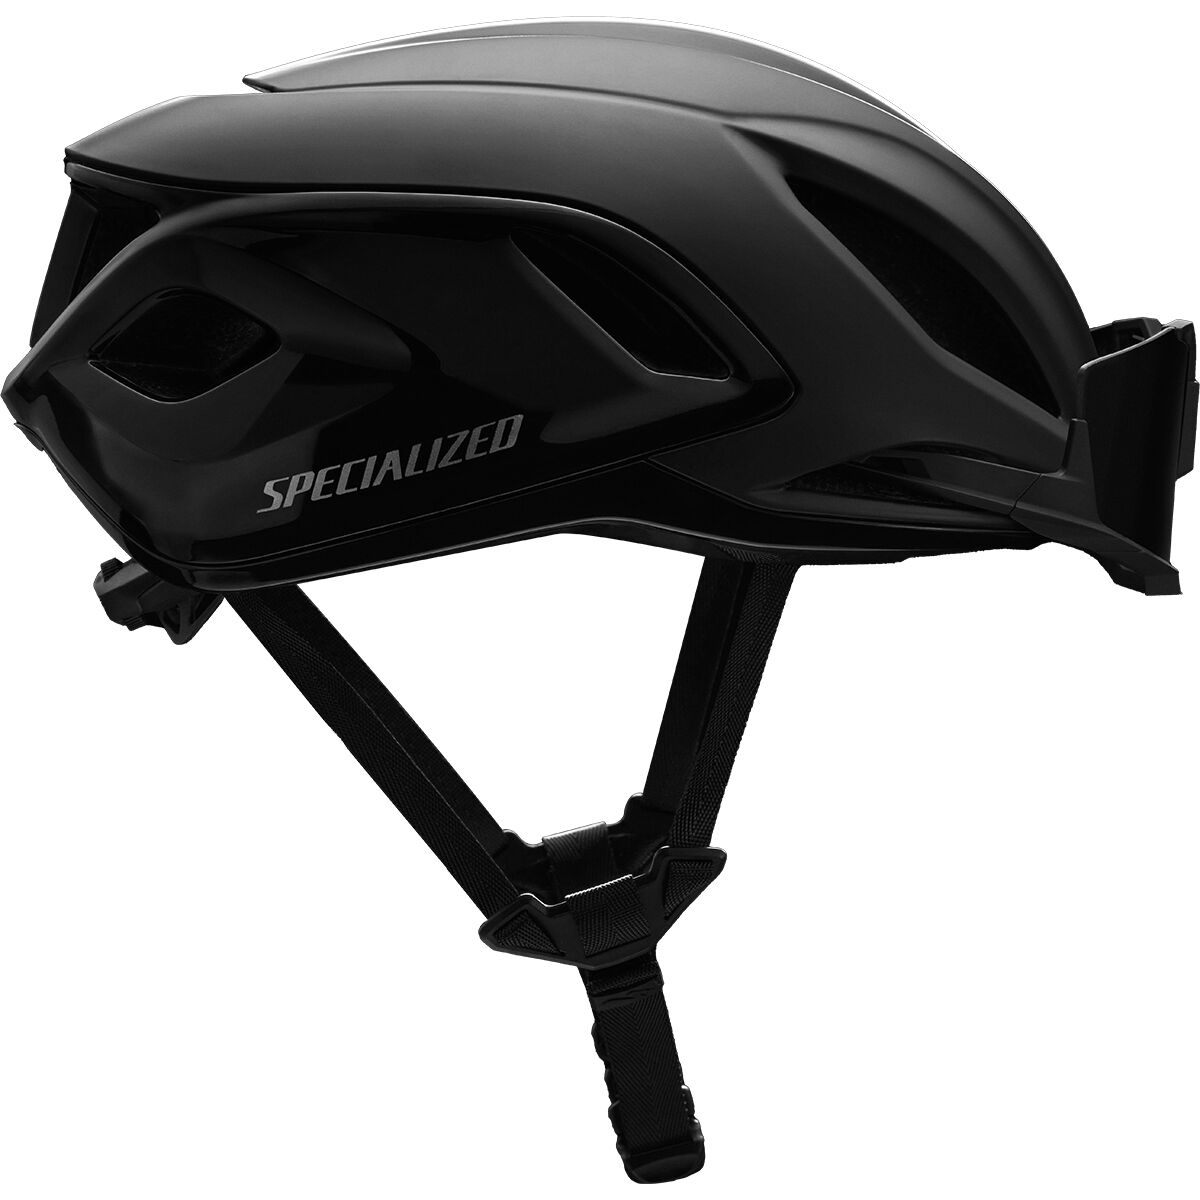 Велосипедный шлем propero 4 Specialized, черный